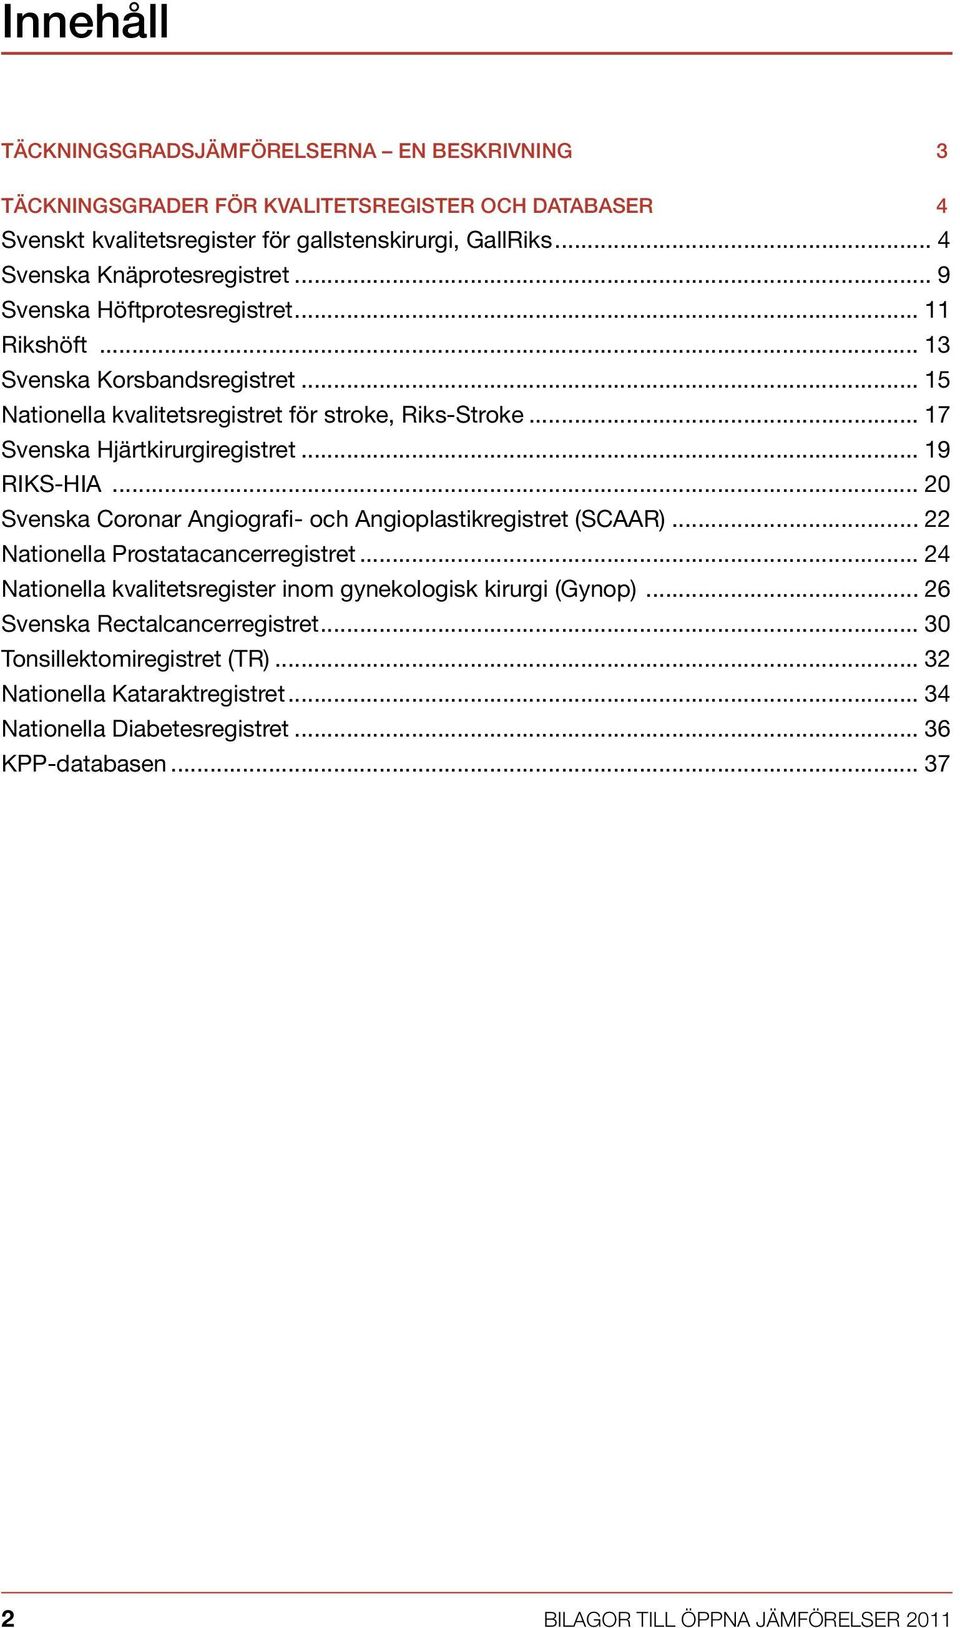 .. 17 Svenska Hjärtkirurgiregistret... 19 RIKS-HIA... 20 Svenska Coronar Angiografi- och Angioplastikregistret (SCAAR)... 22 Nationella Prostatacancerregistret.